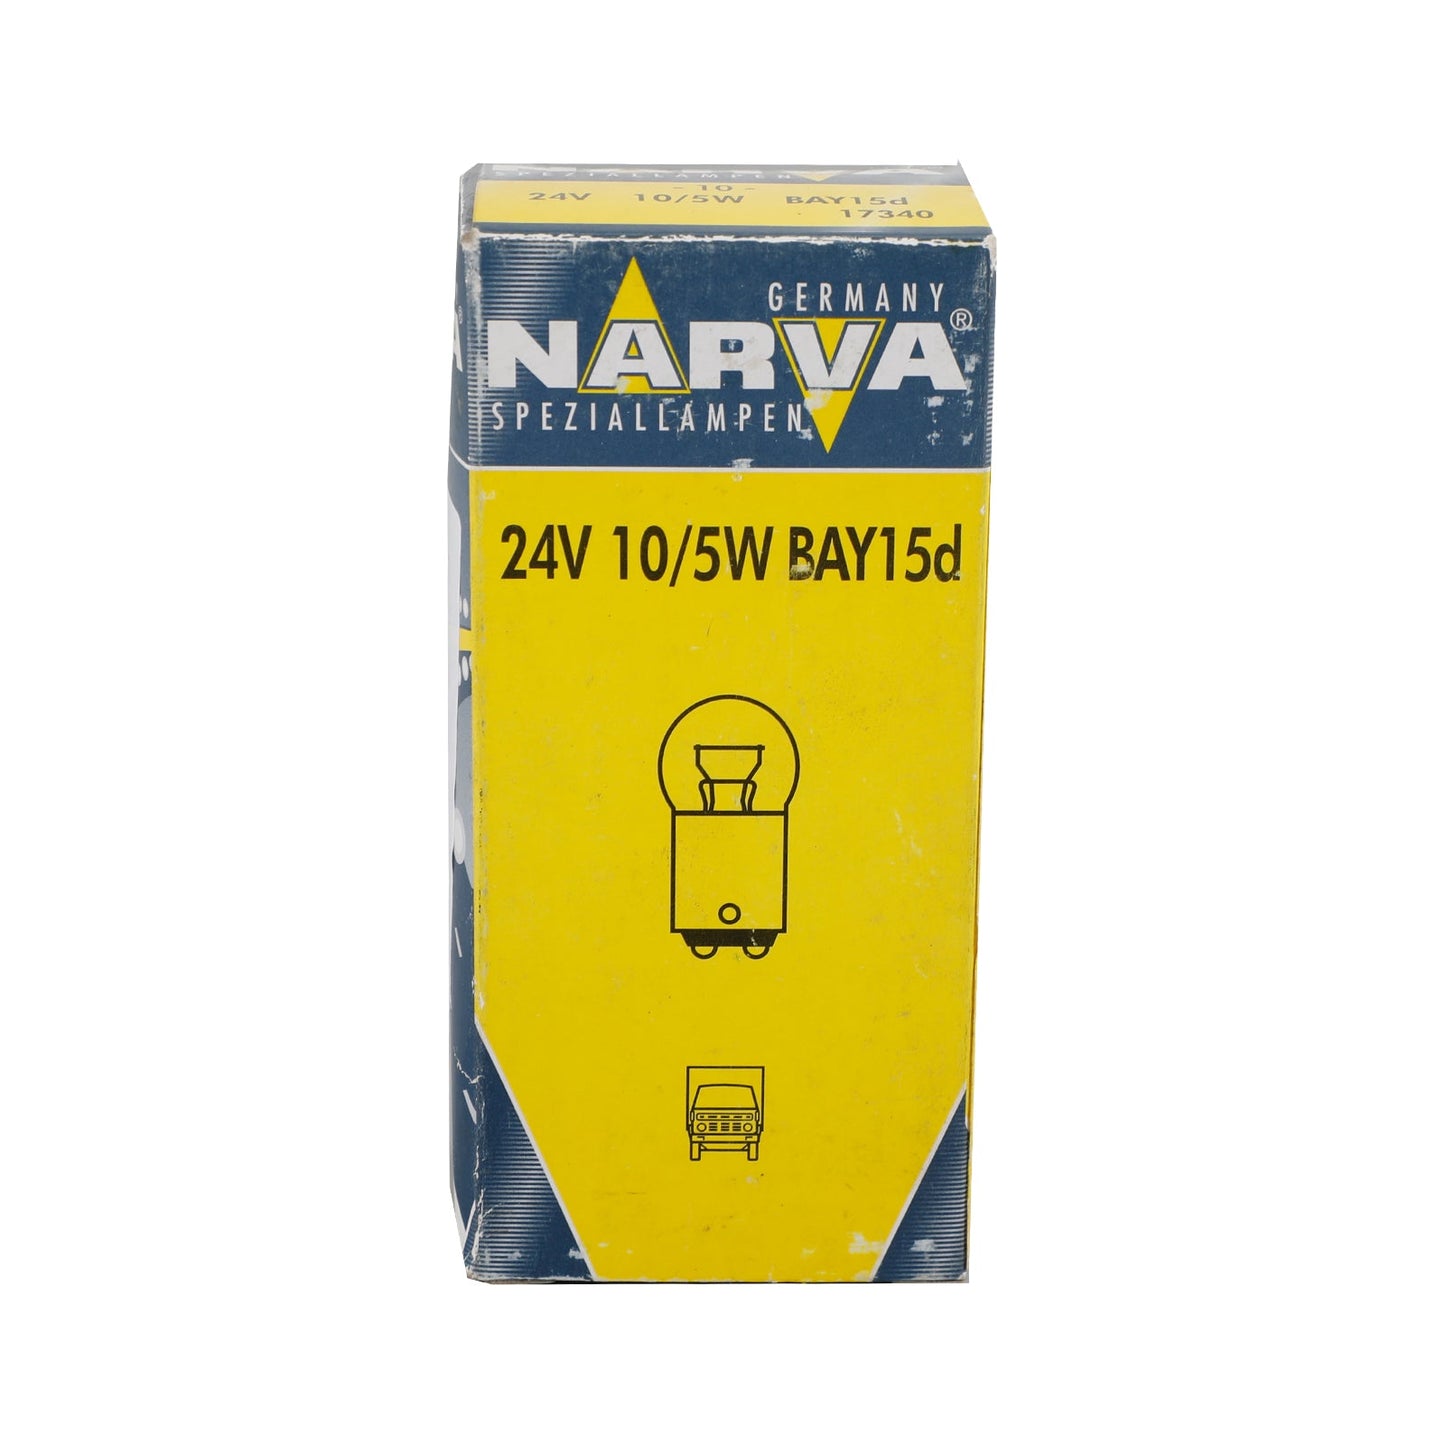 10x für NARVA 17340 Kfz-Zusatzbirnen P10/5W 24V 10/5W BAY15d